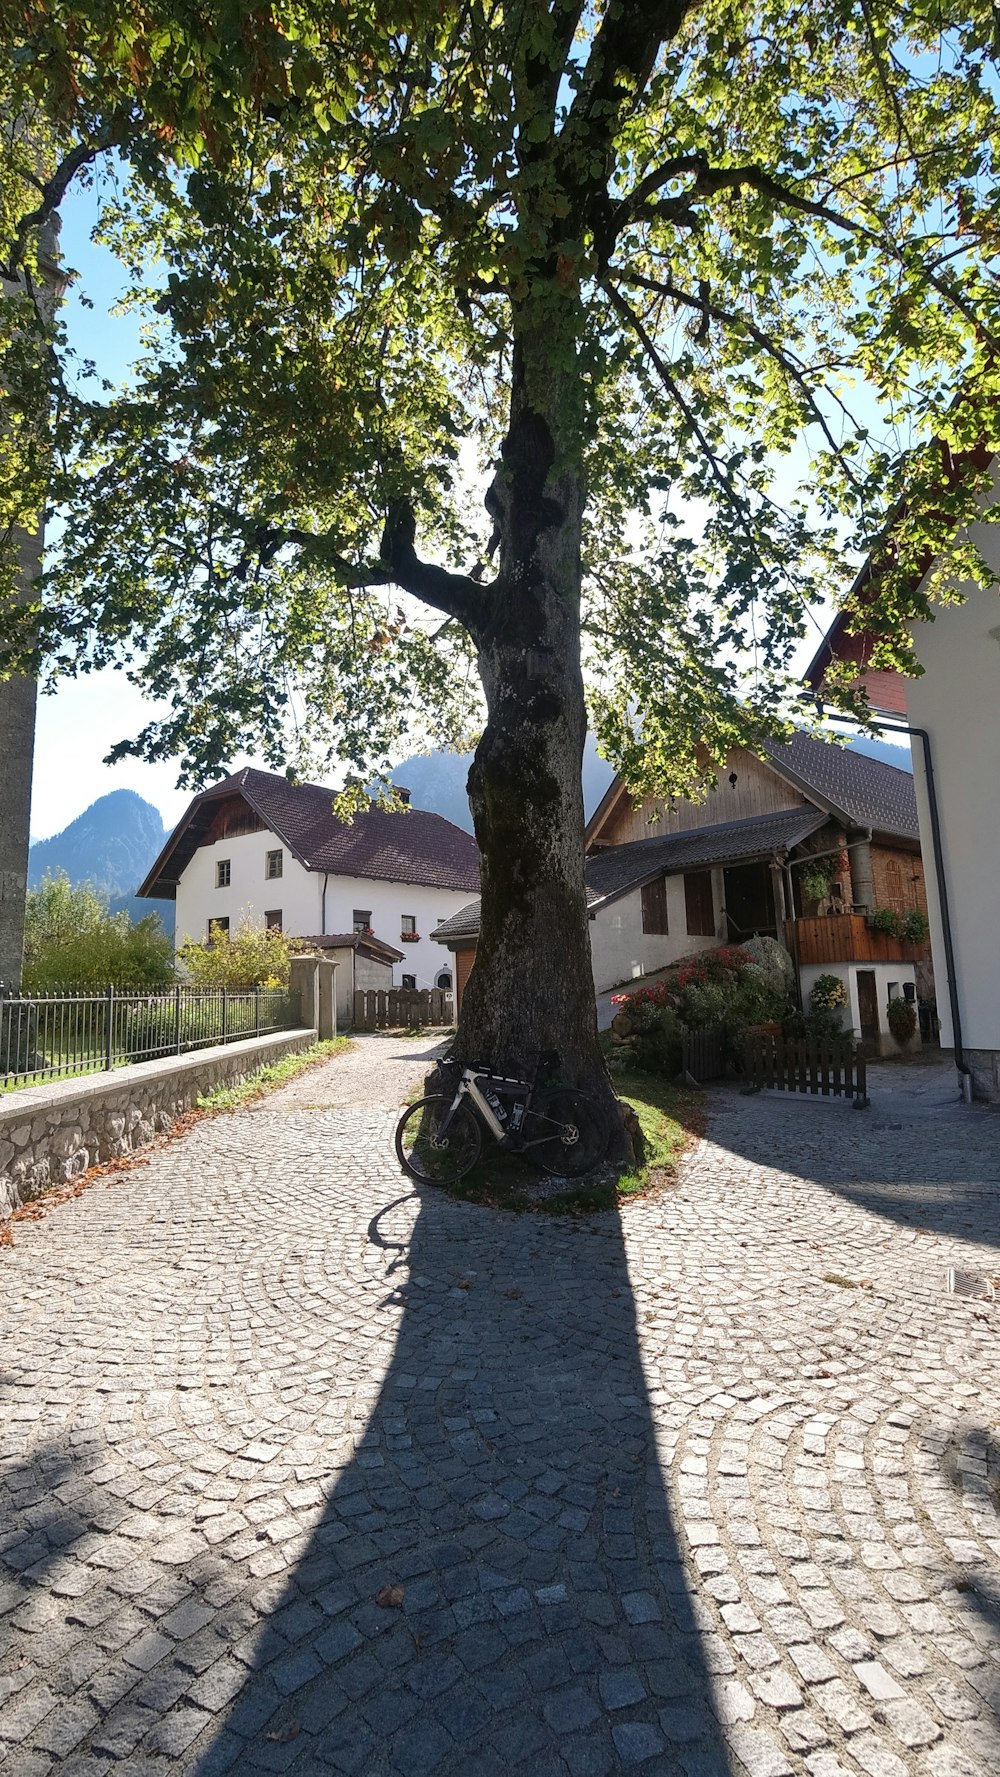 Una bicicleta estacionada debajo de un árbol en un camino empedrado